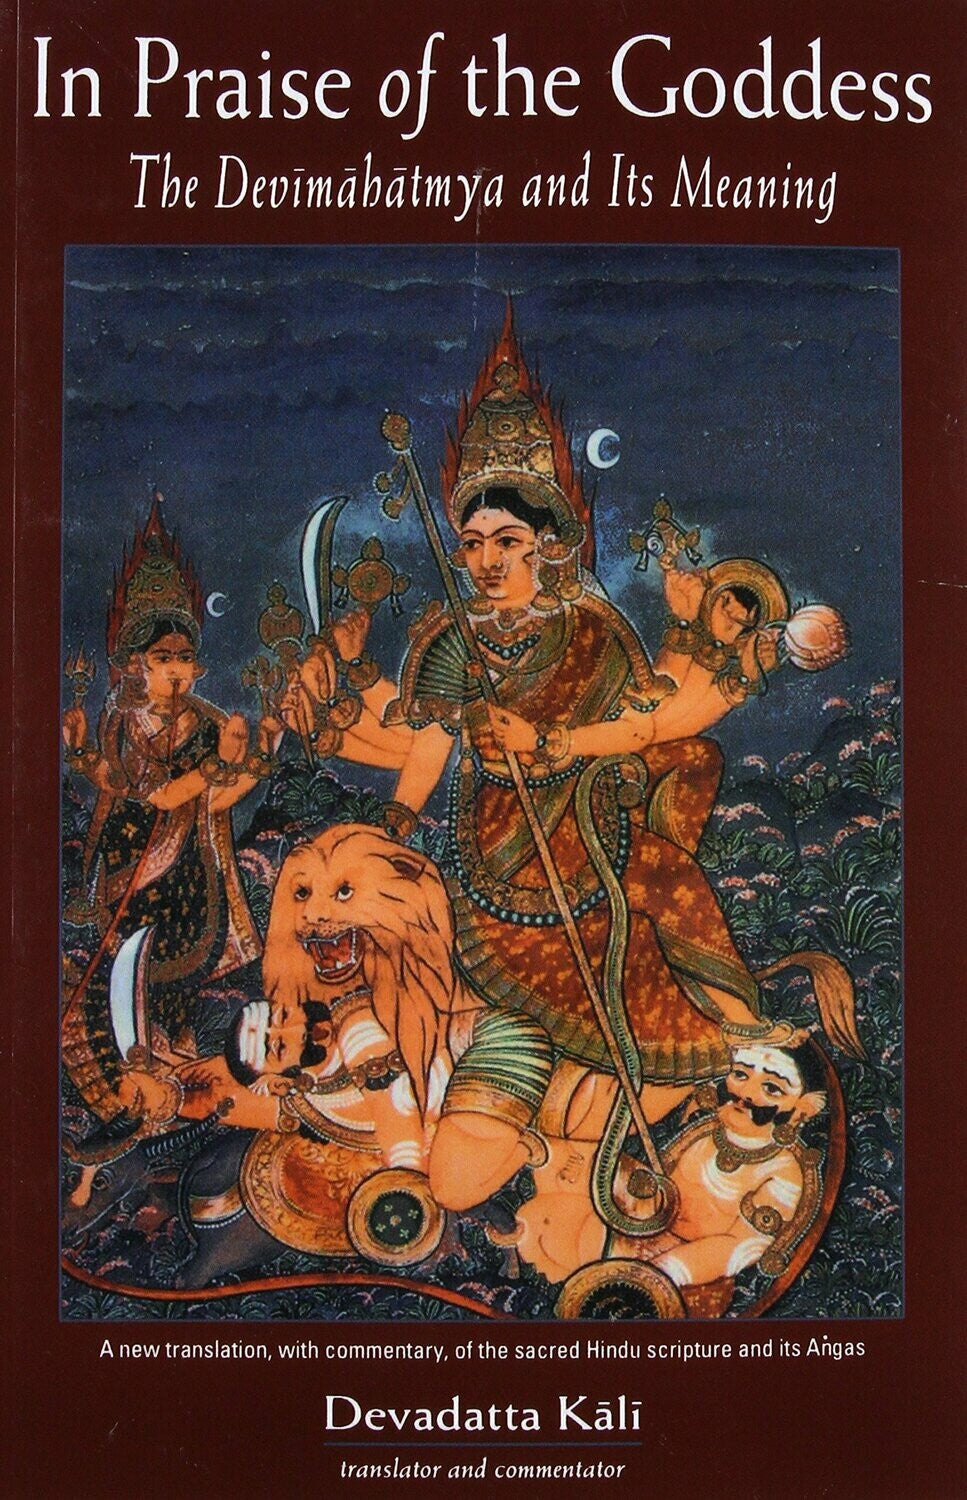 In Praise of the Goddess by Devadatta Kali